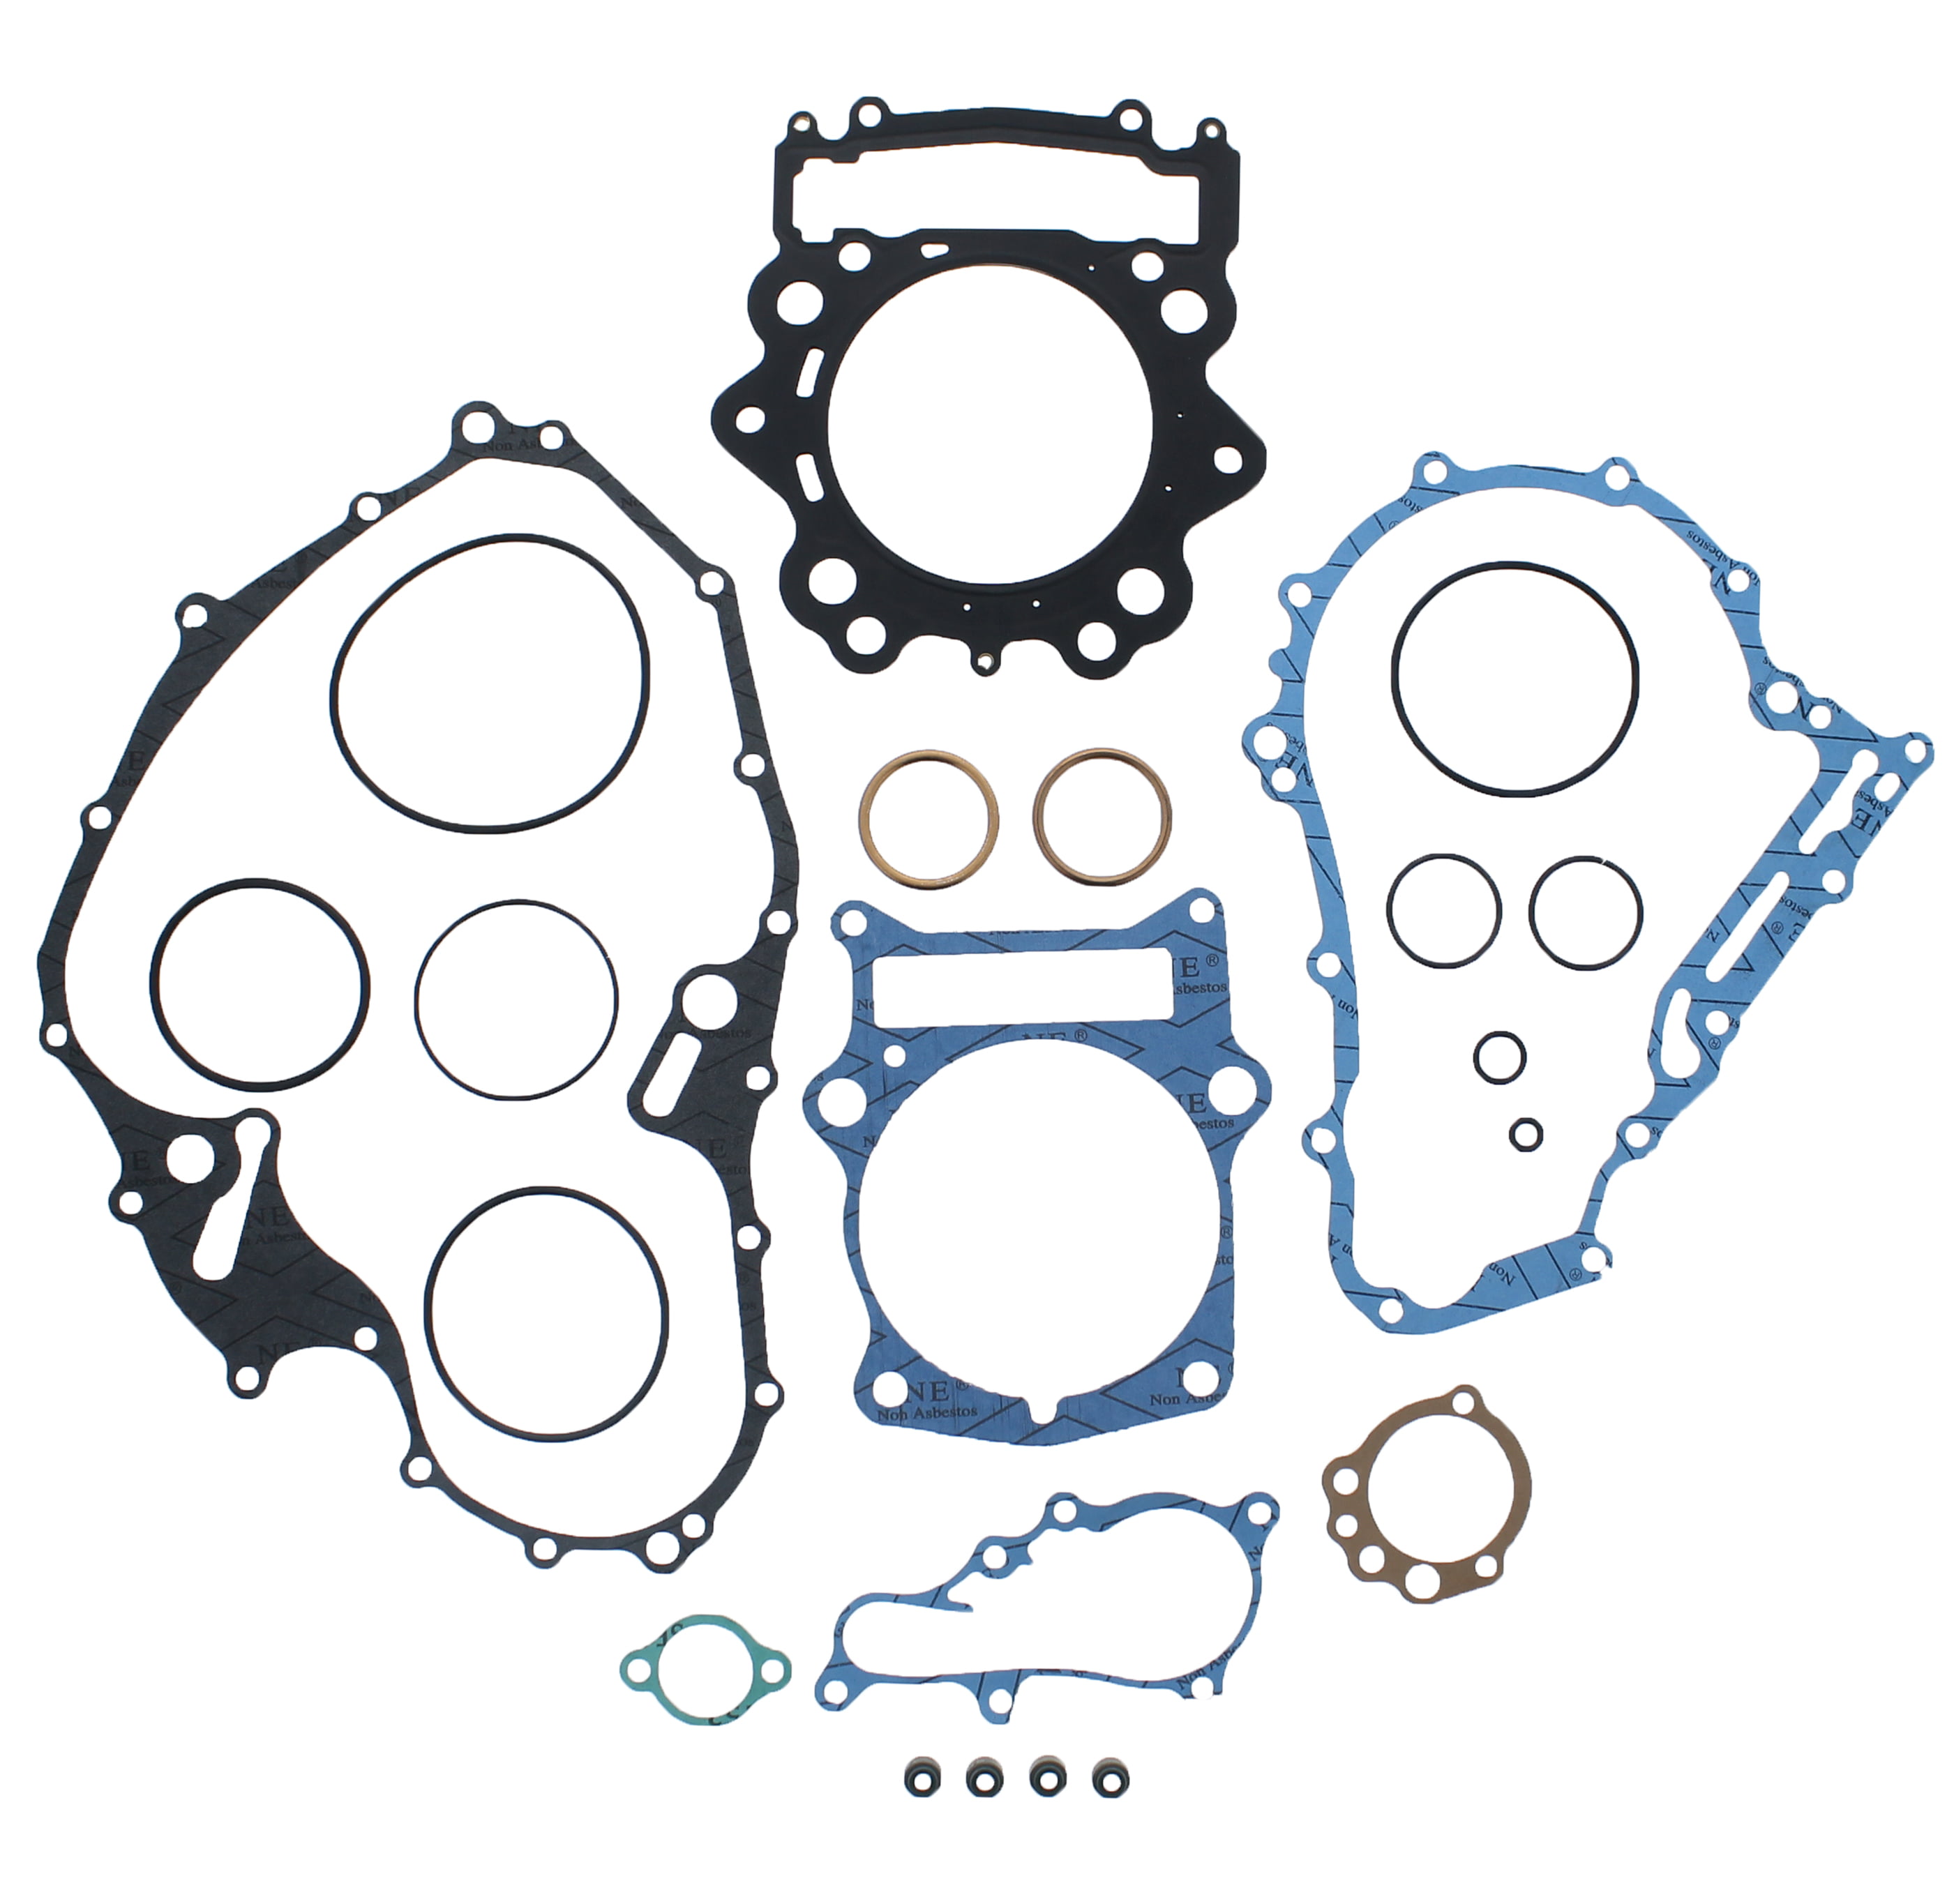 Valve Seal Gasket Rebuit Kit Fits Yamaha Raptor 700 2006-2014 YFM700R Engine